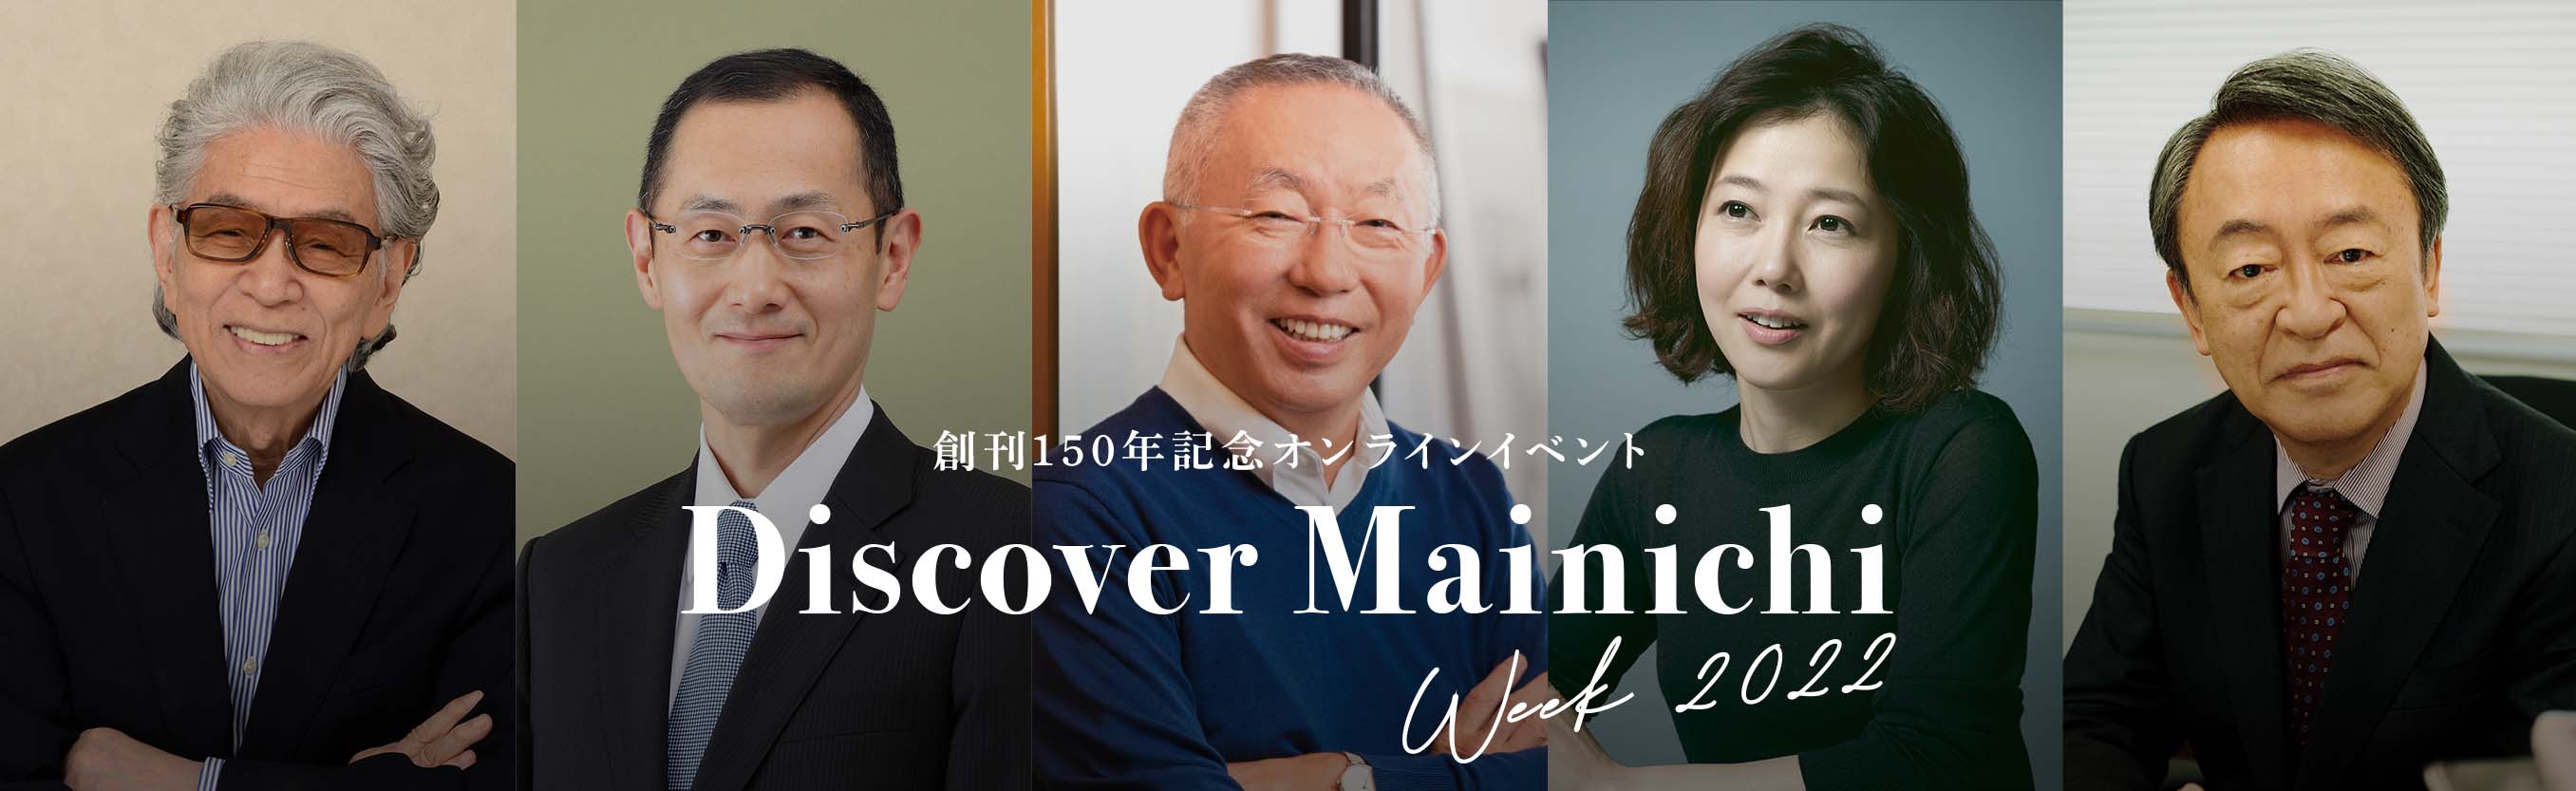 創刊150年記念オンラインイベント Discover Mainichi 多彩な８回のトークセッション Week 2022